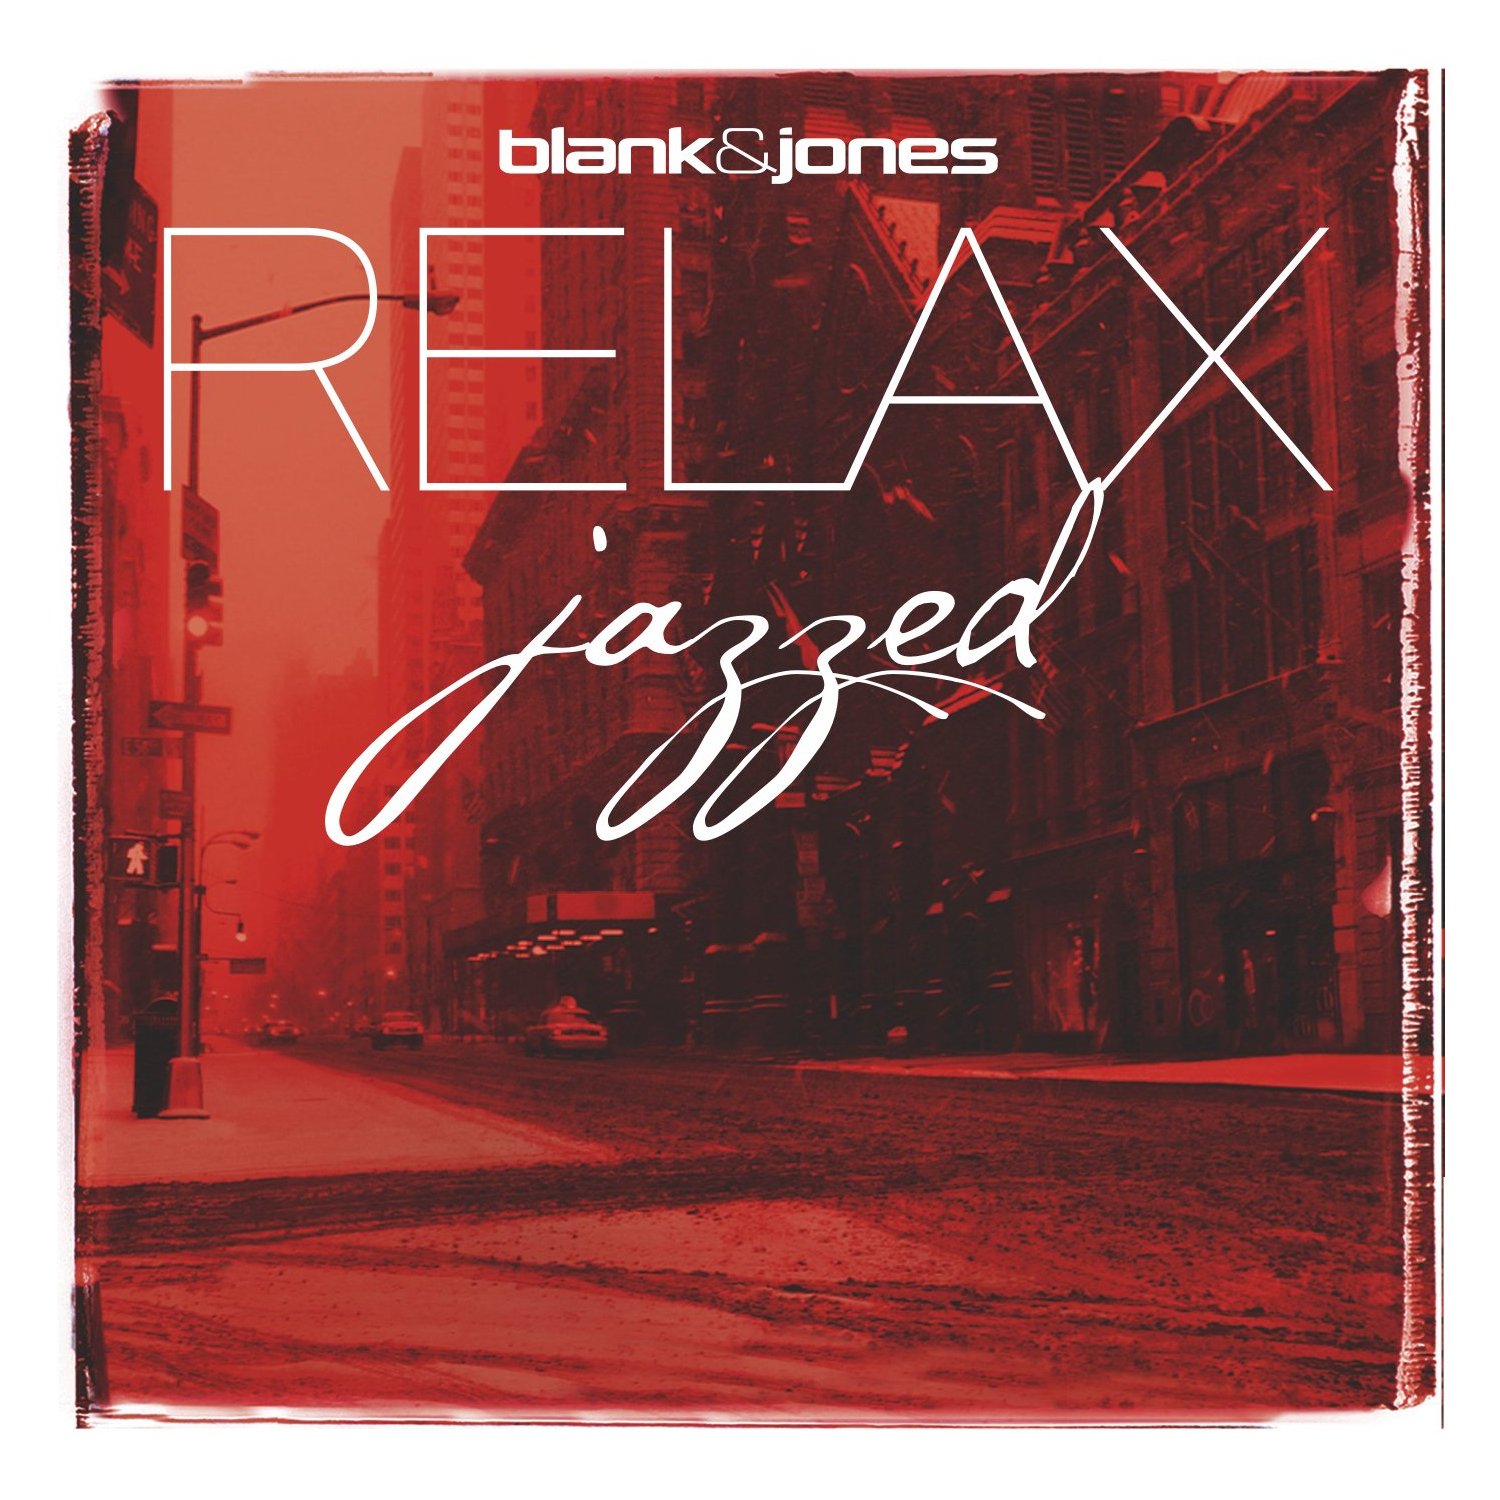 BLANK  JONES: RELAX jazzed